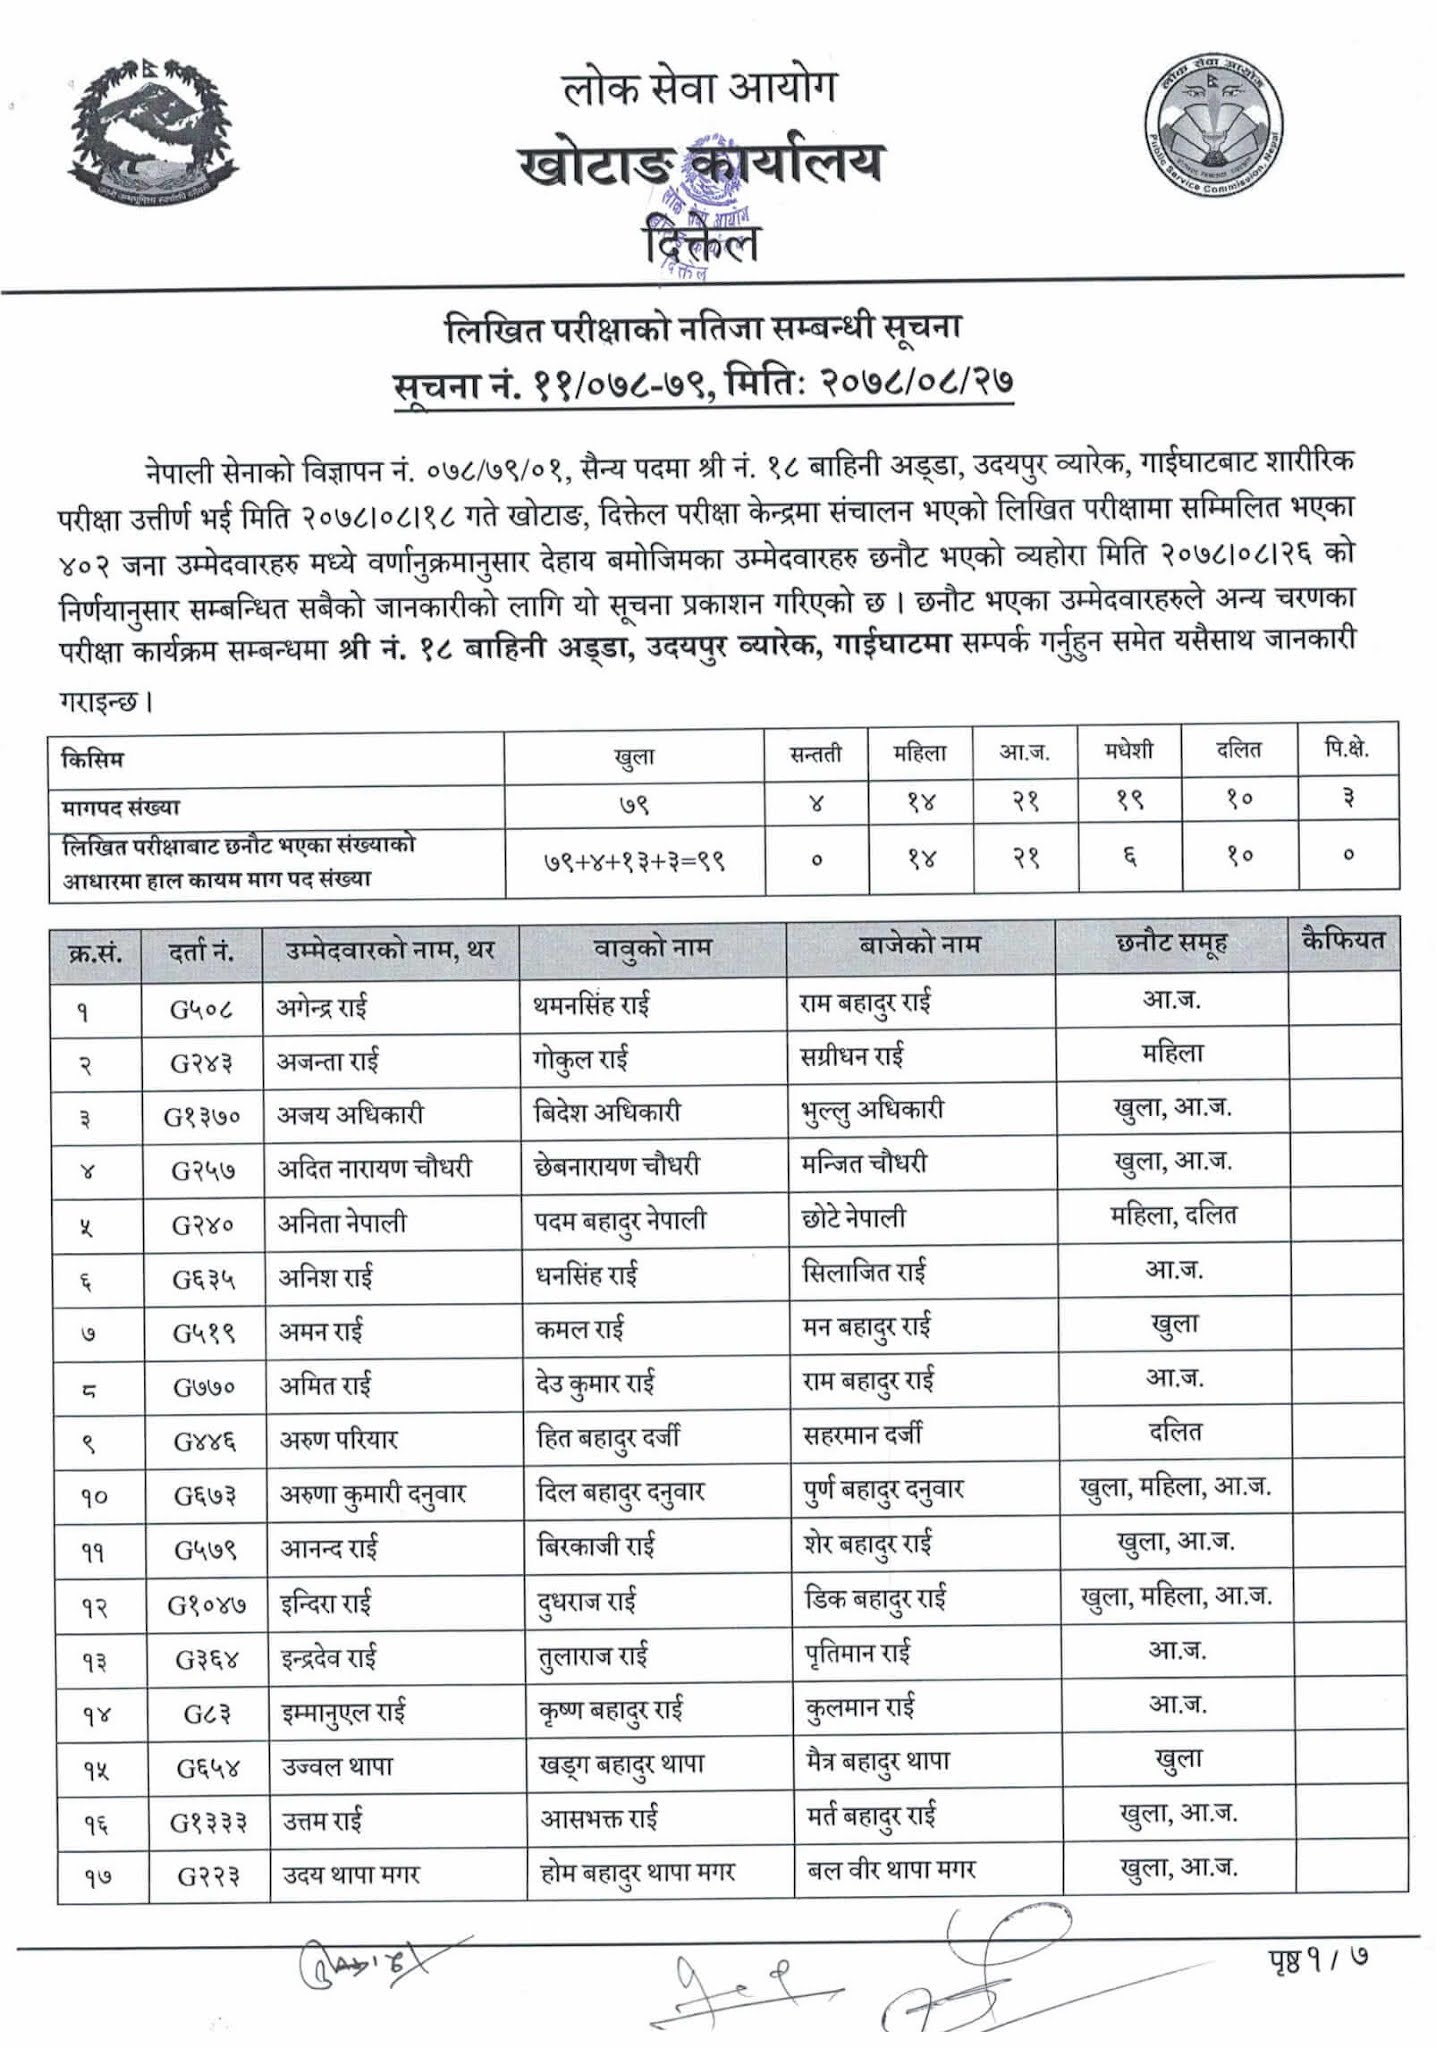 Nepal Army Sainya Written Exam Result Gaighat